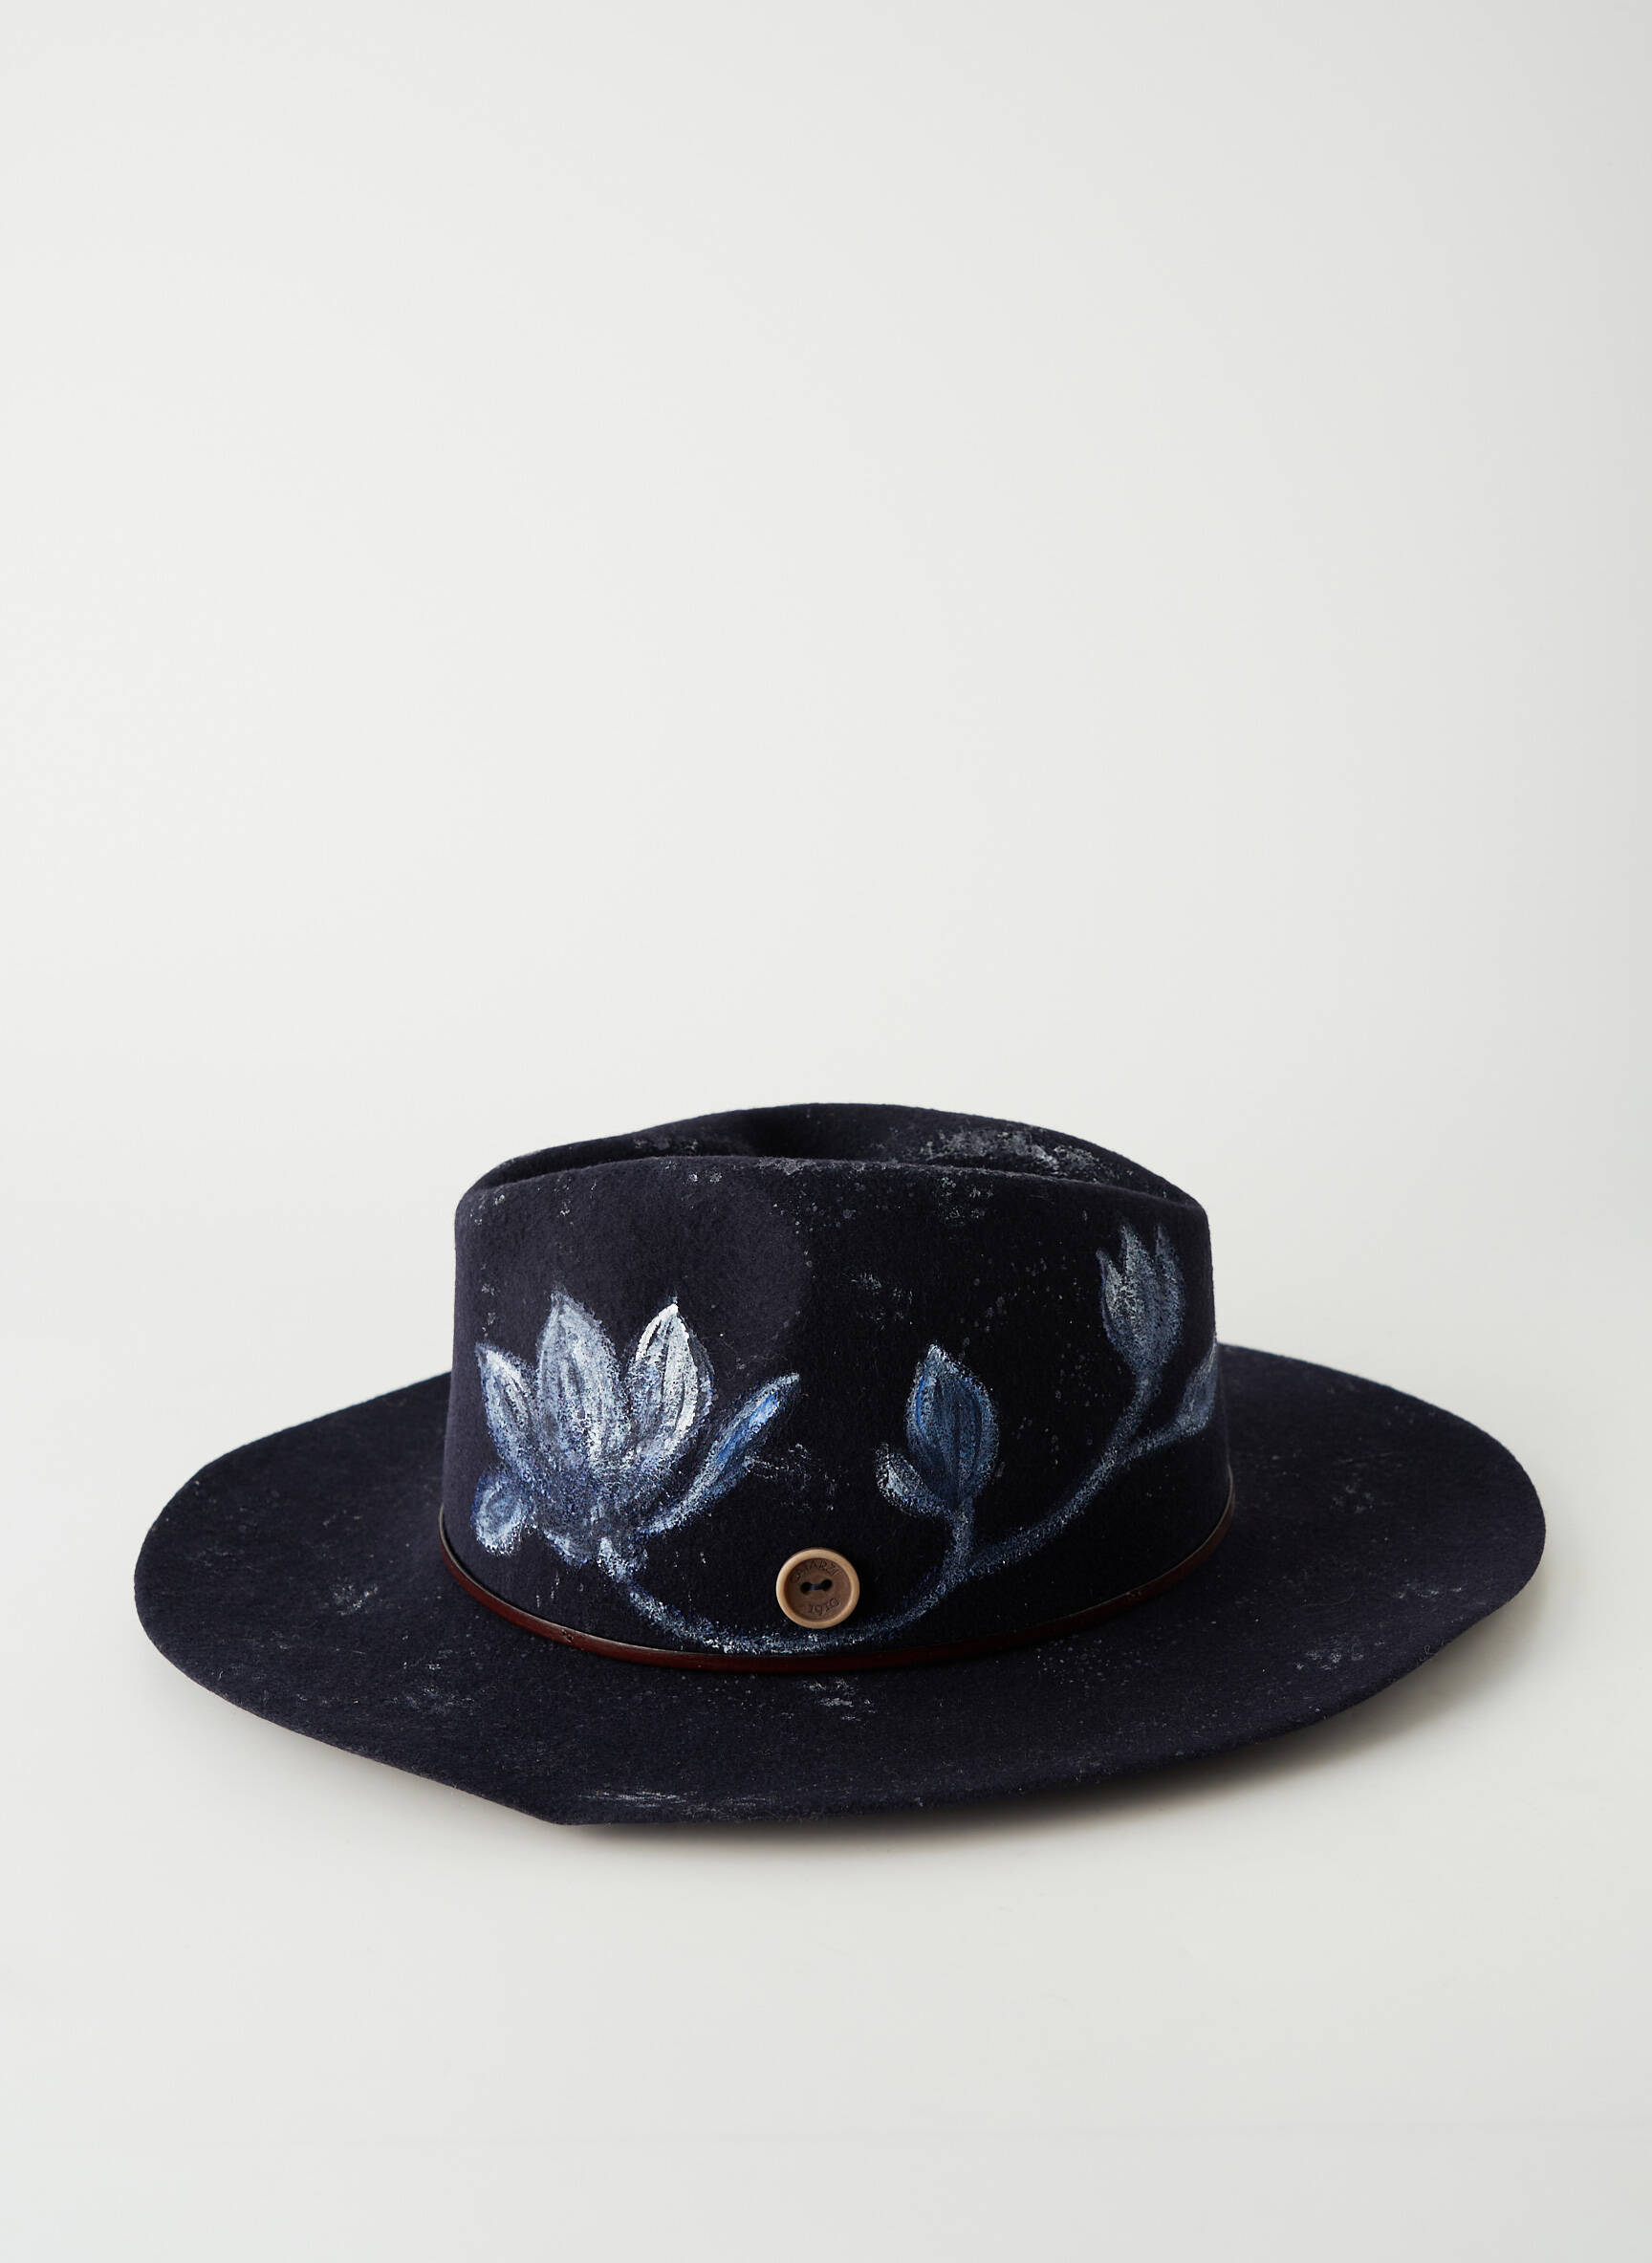 CATARZI Chapeau de couleur bleu en soldes pas cher 2105900-bleu00 - Modz